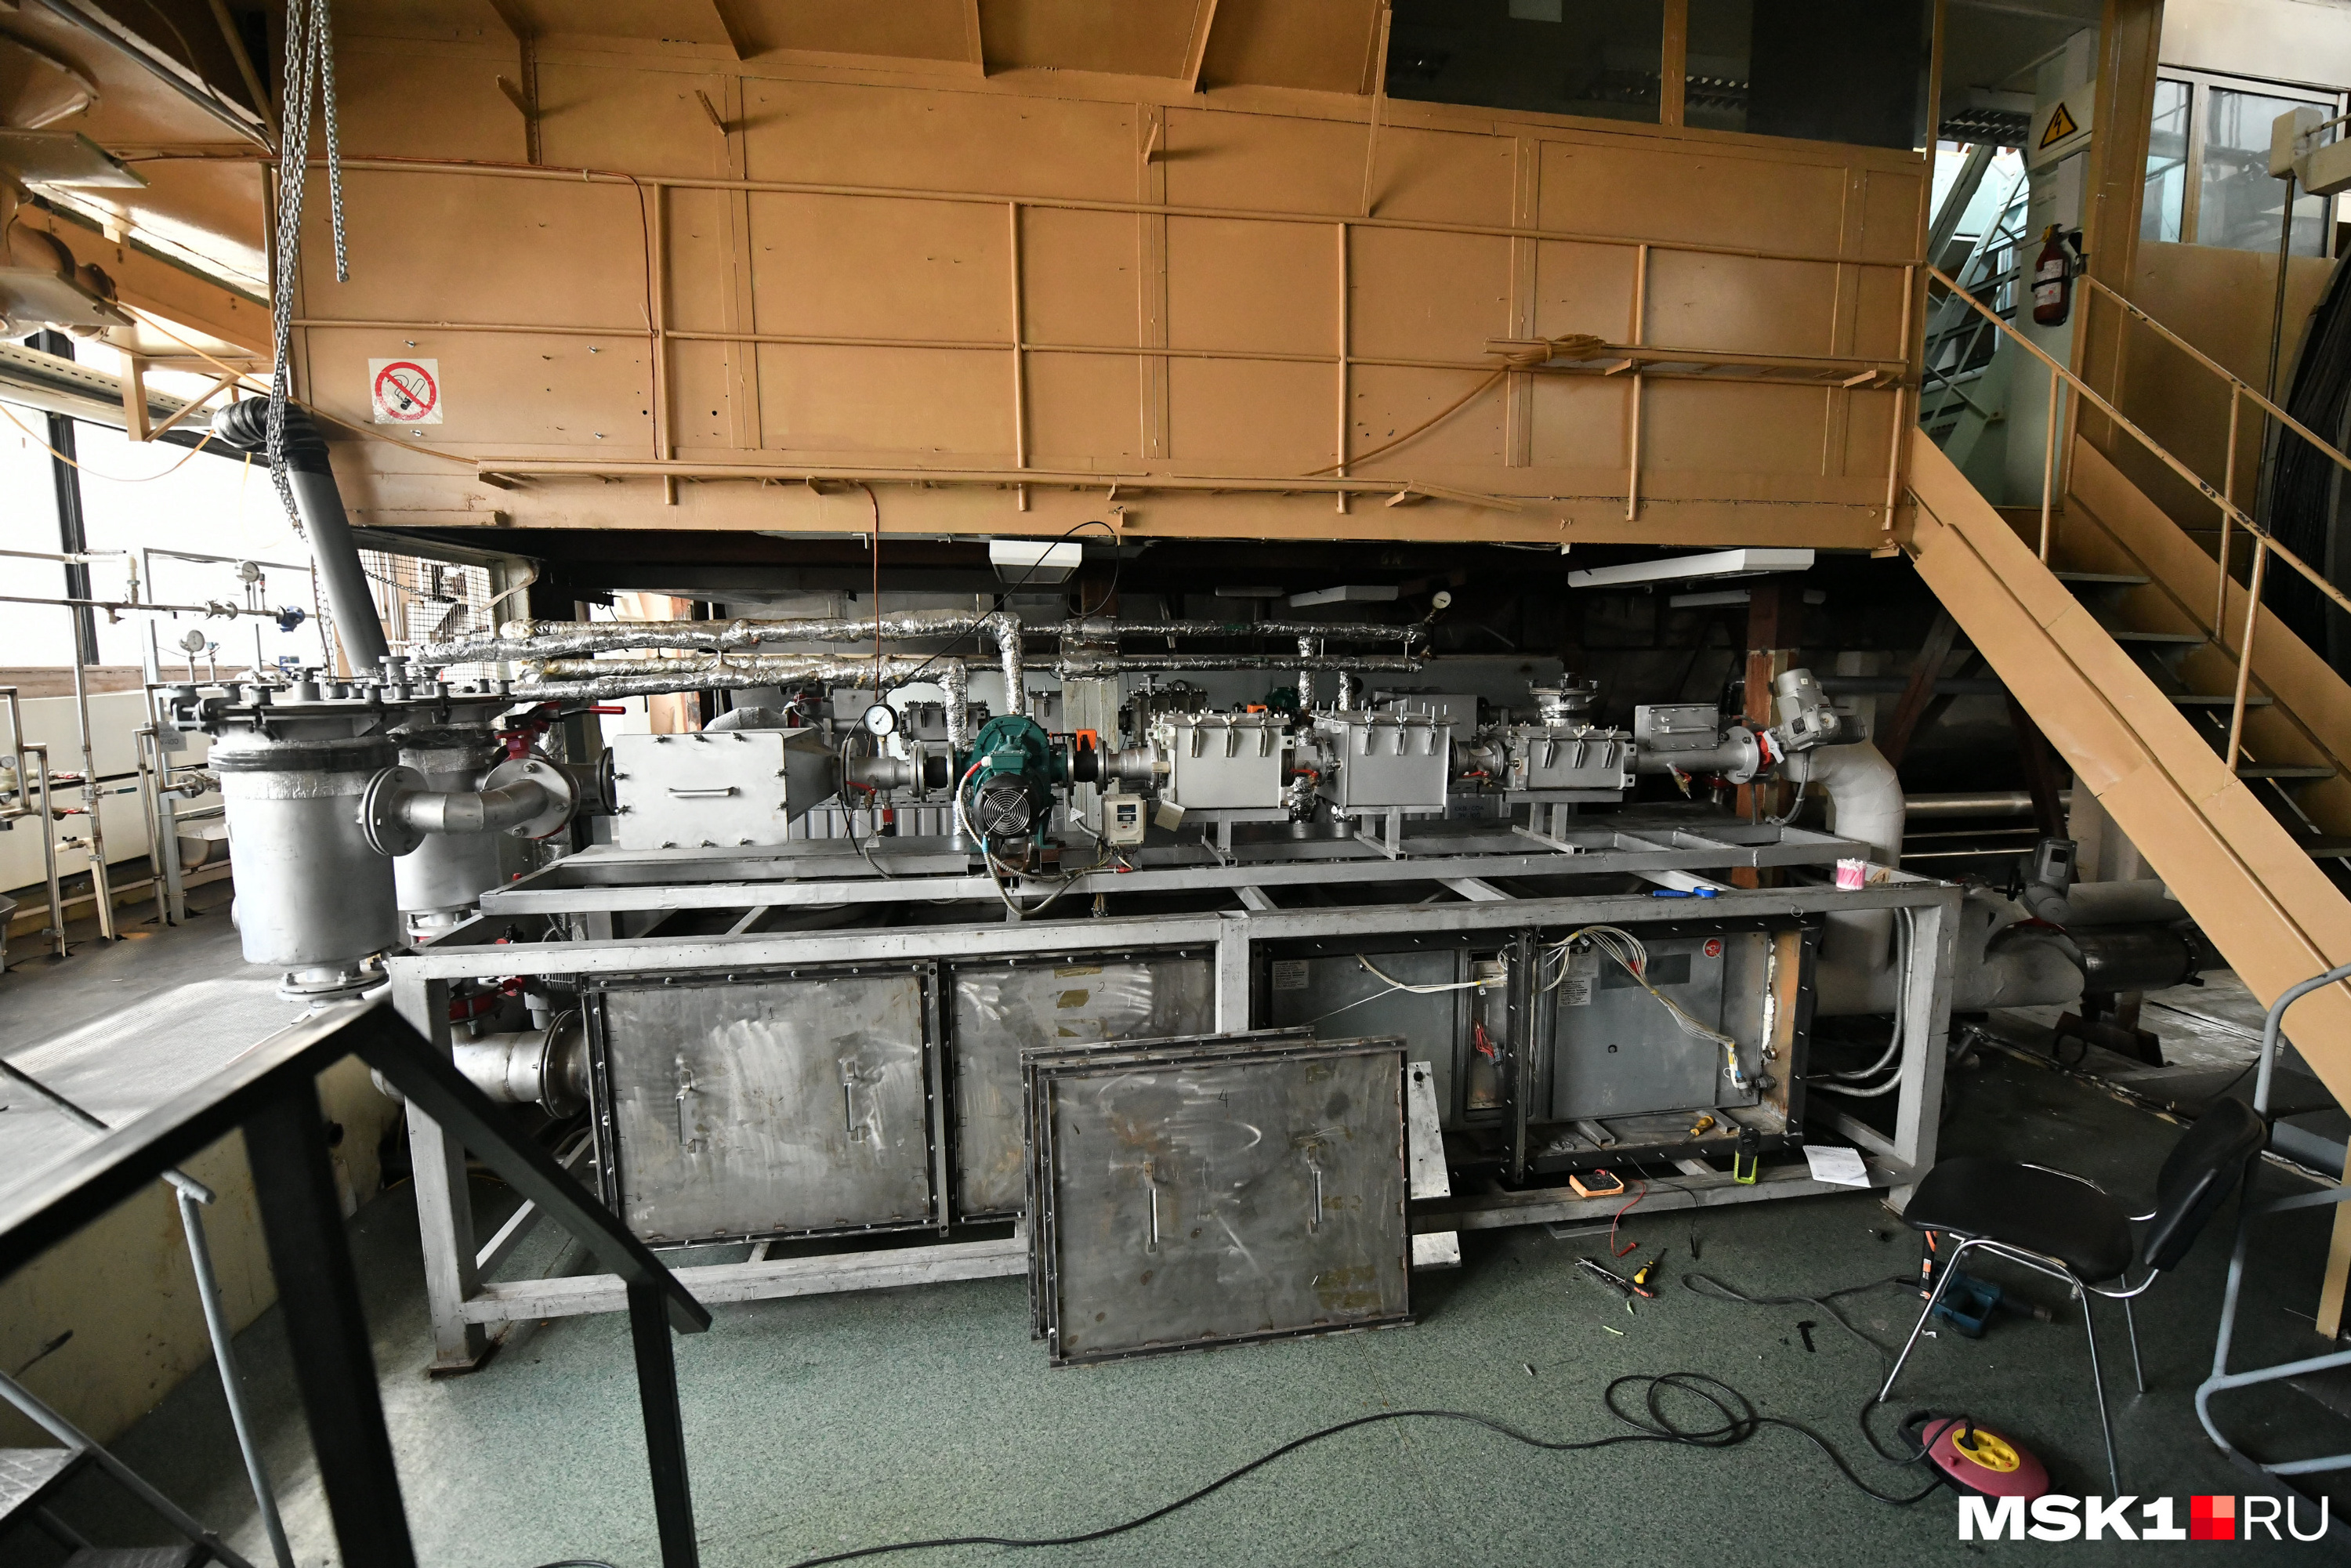 Огромное количество оборудования для поддержания работы экспериментального модуля находится вокруг него